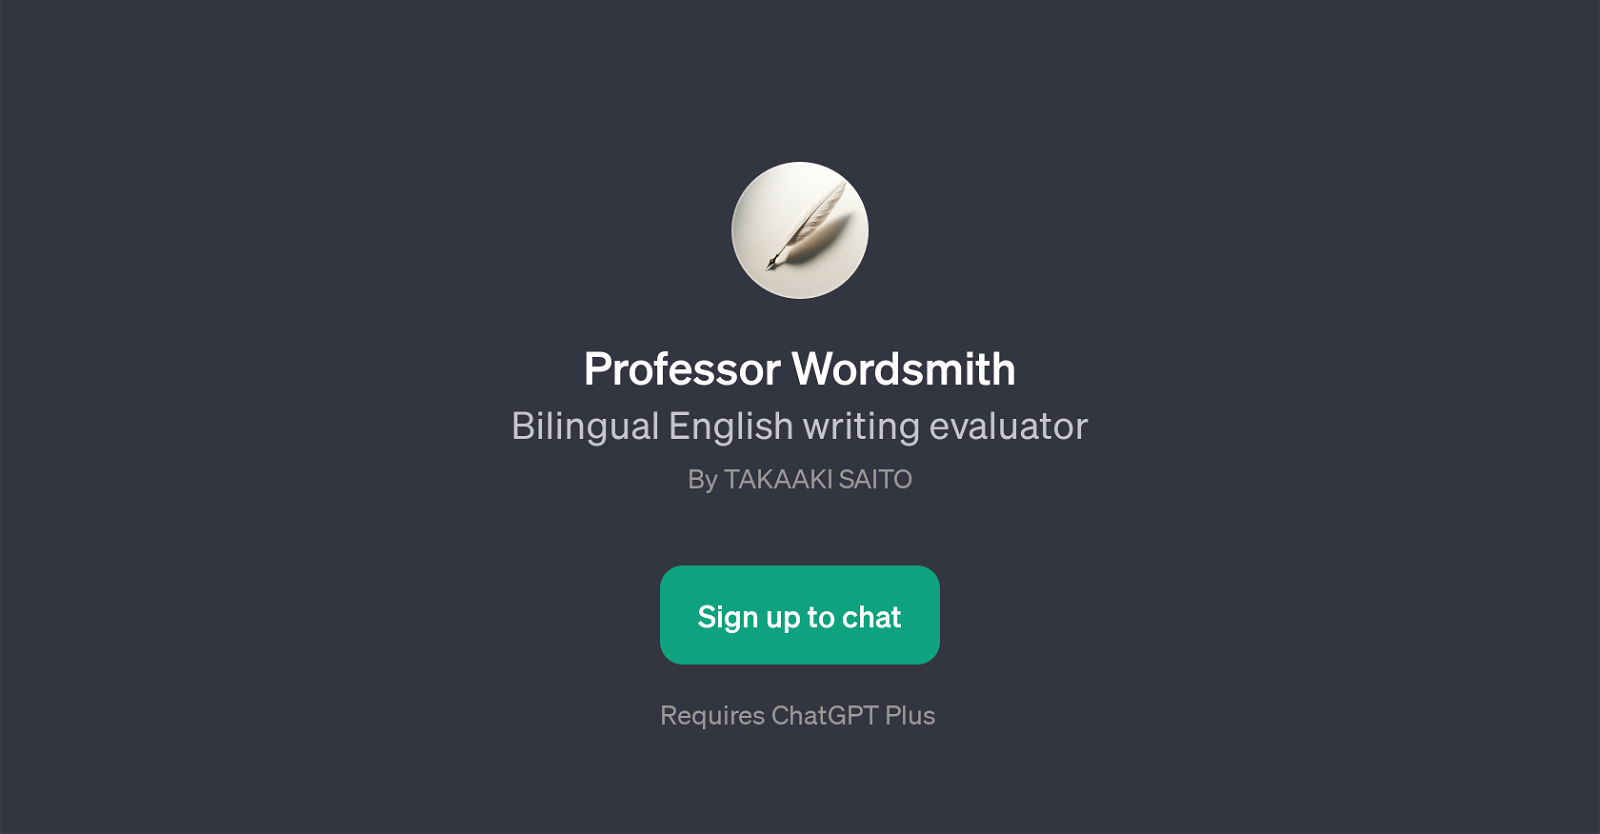 Professor Wordsmith website